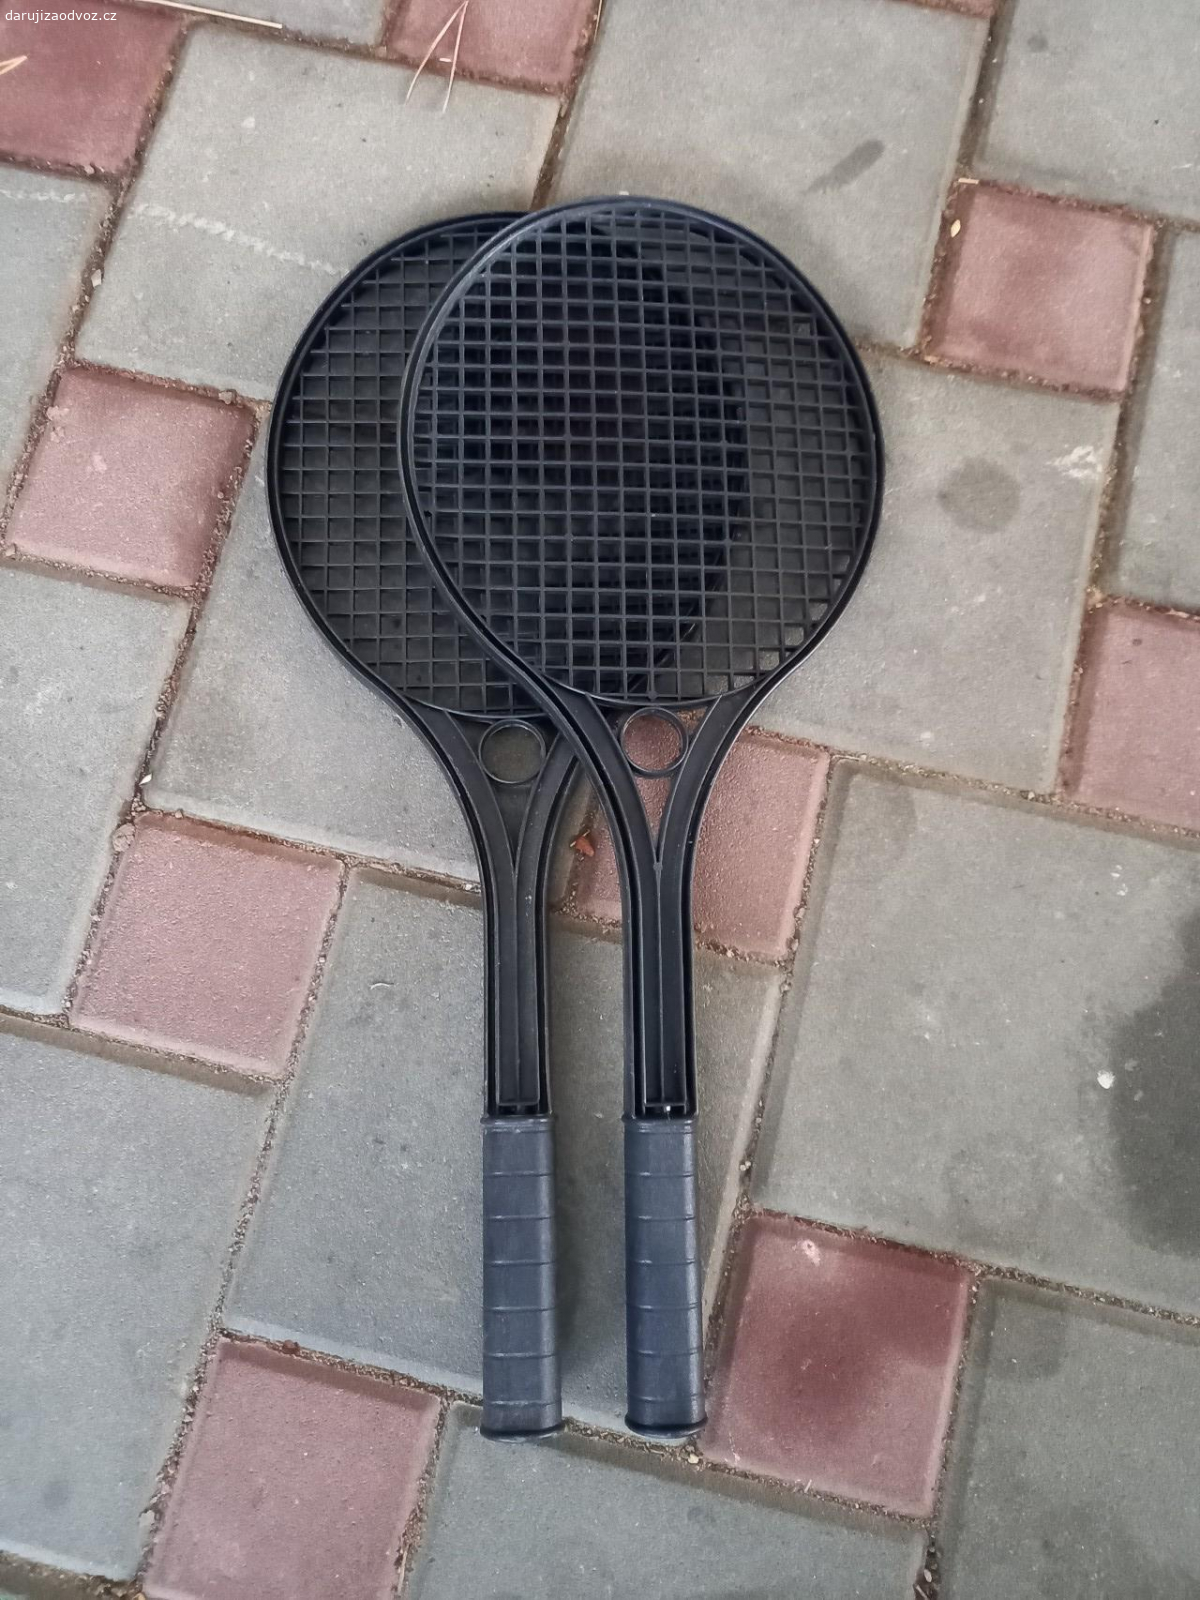 Rakety na soft (líný) tenis. černé